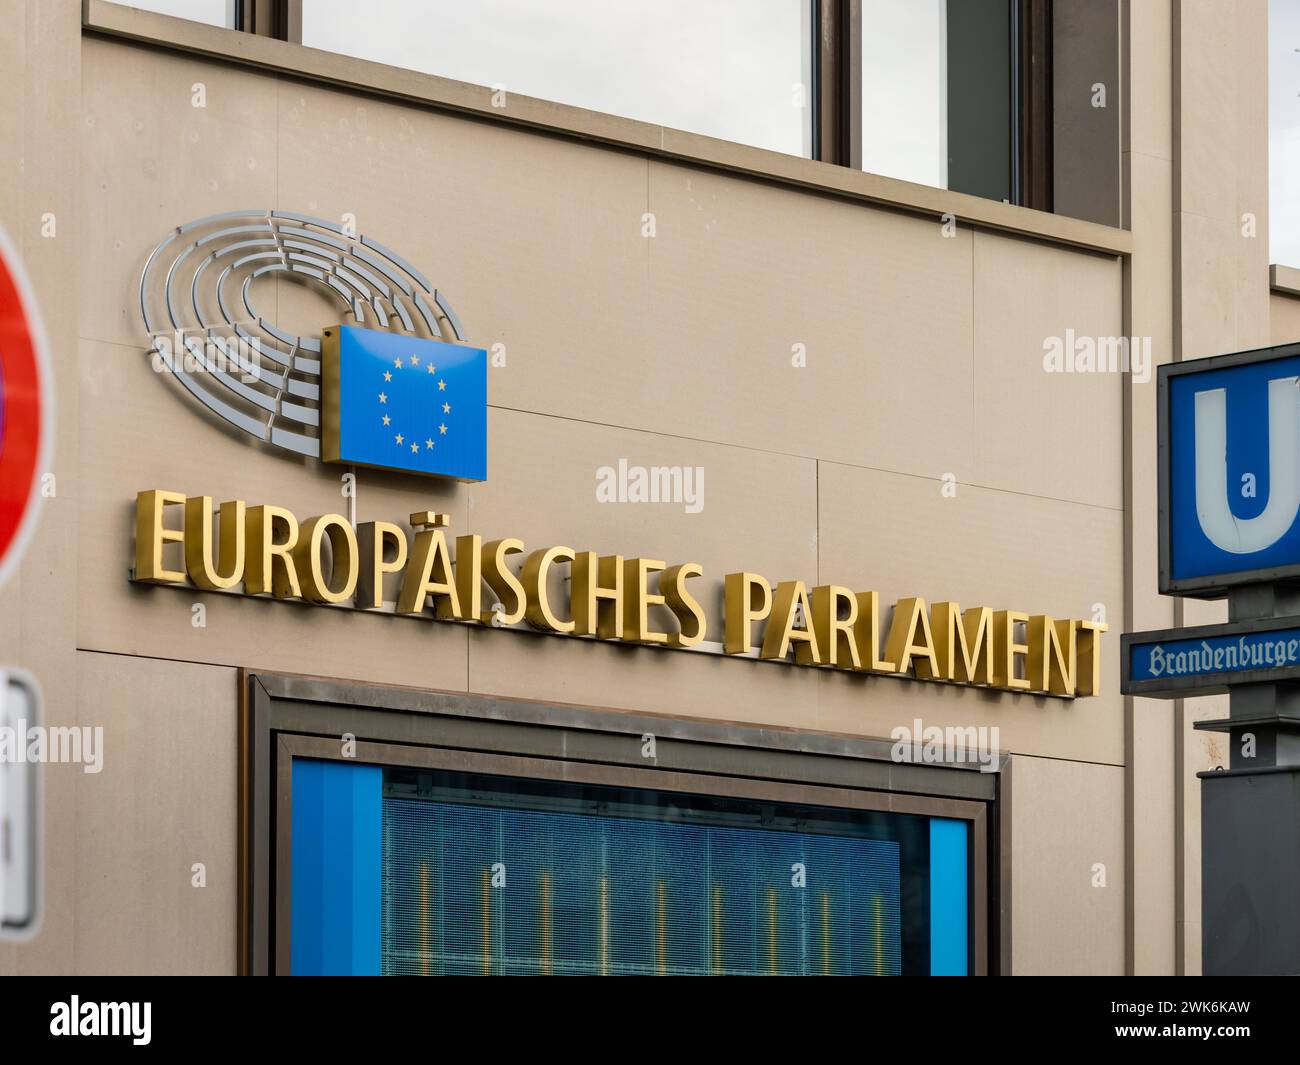 Europäisches Parlament (Europäisches Parlament) unterzeichnet am Europäischen Haus in der Hauptstadt Berlin. Logo für die EU und die Politik in der union. Stockfoto